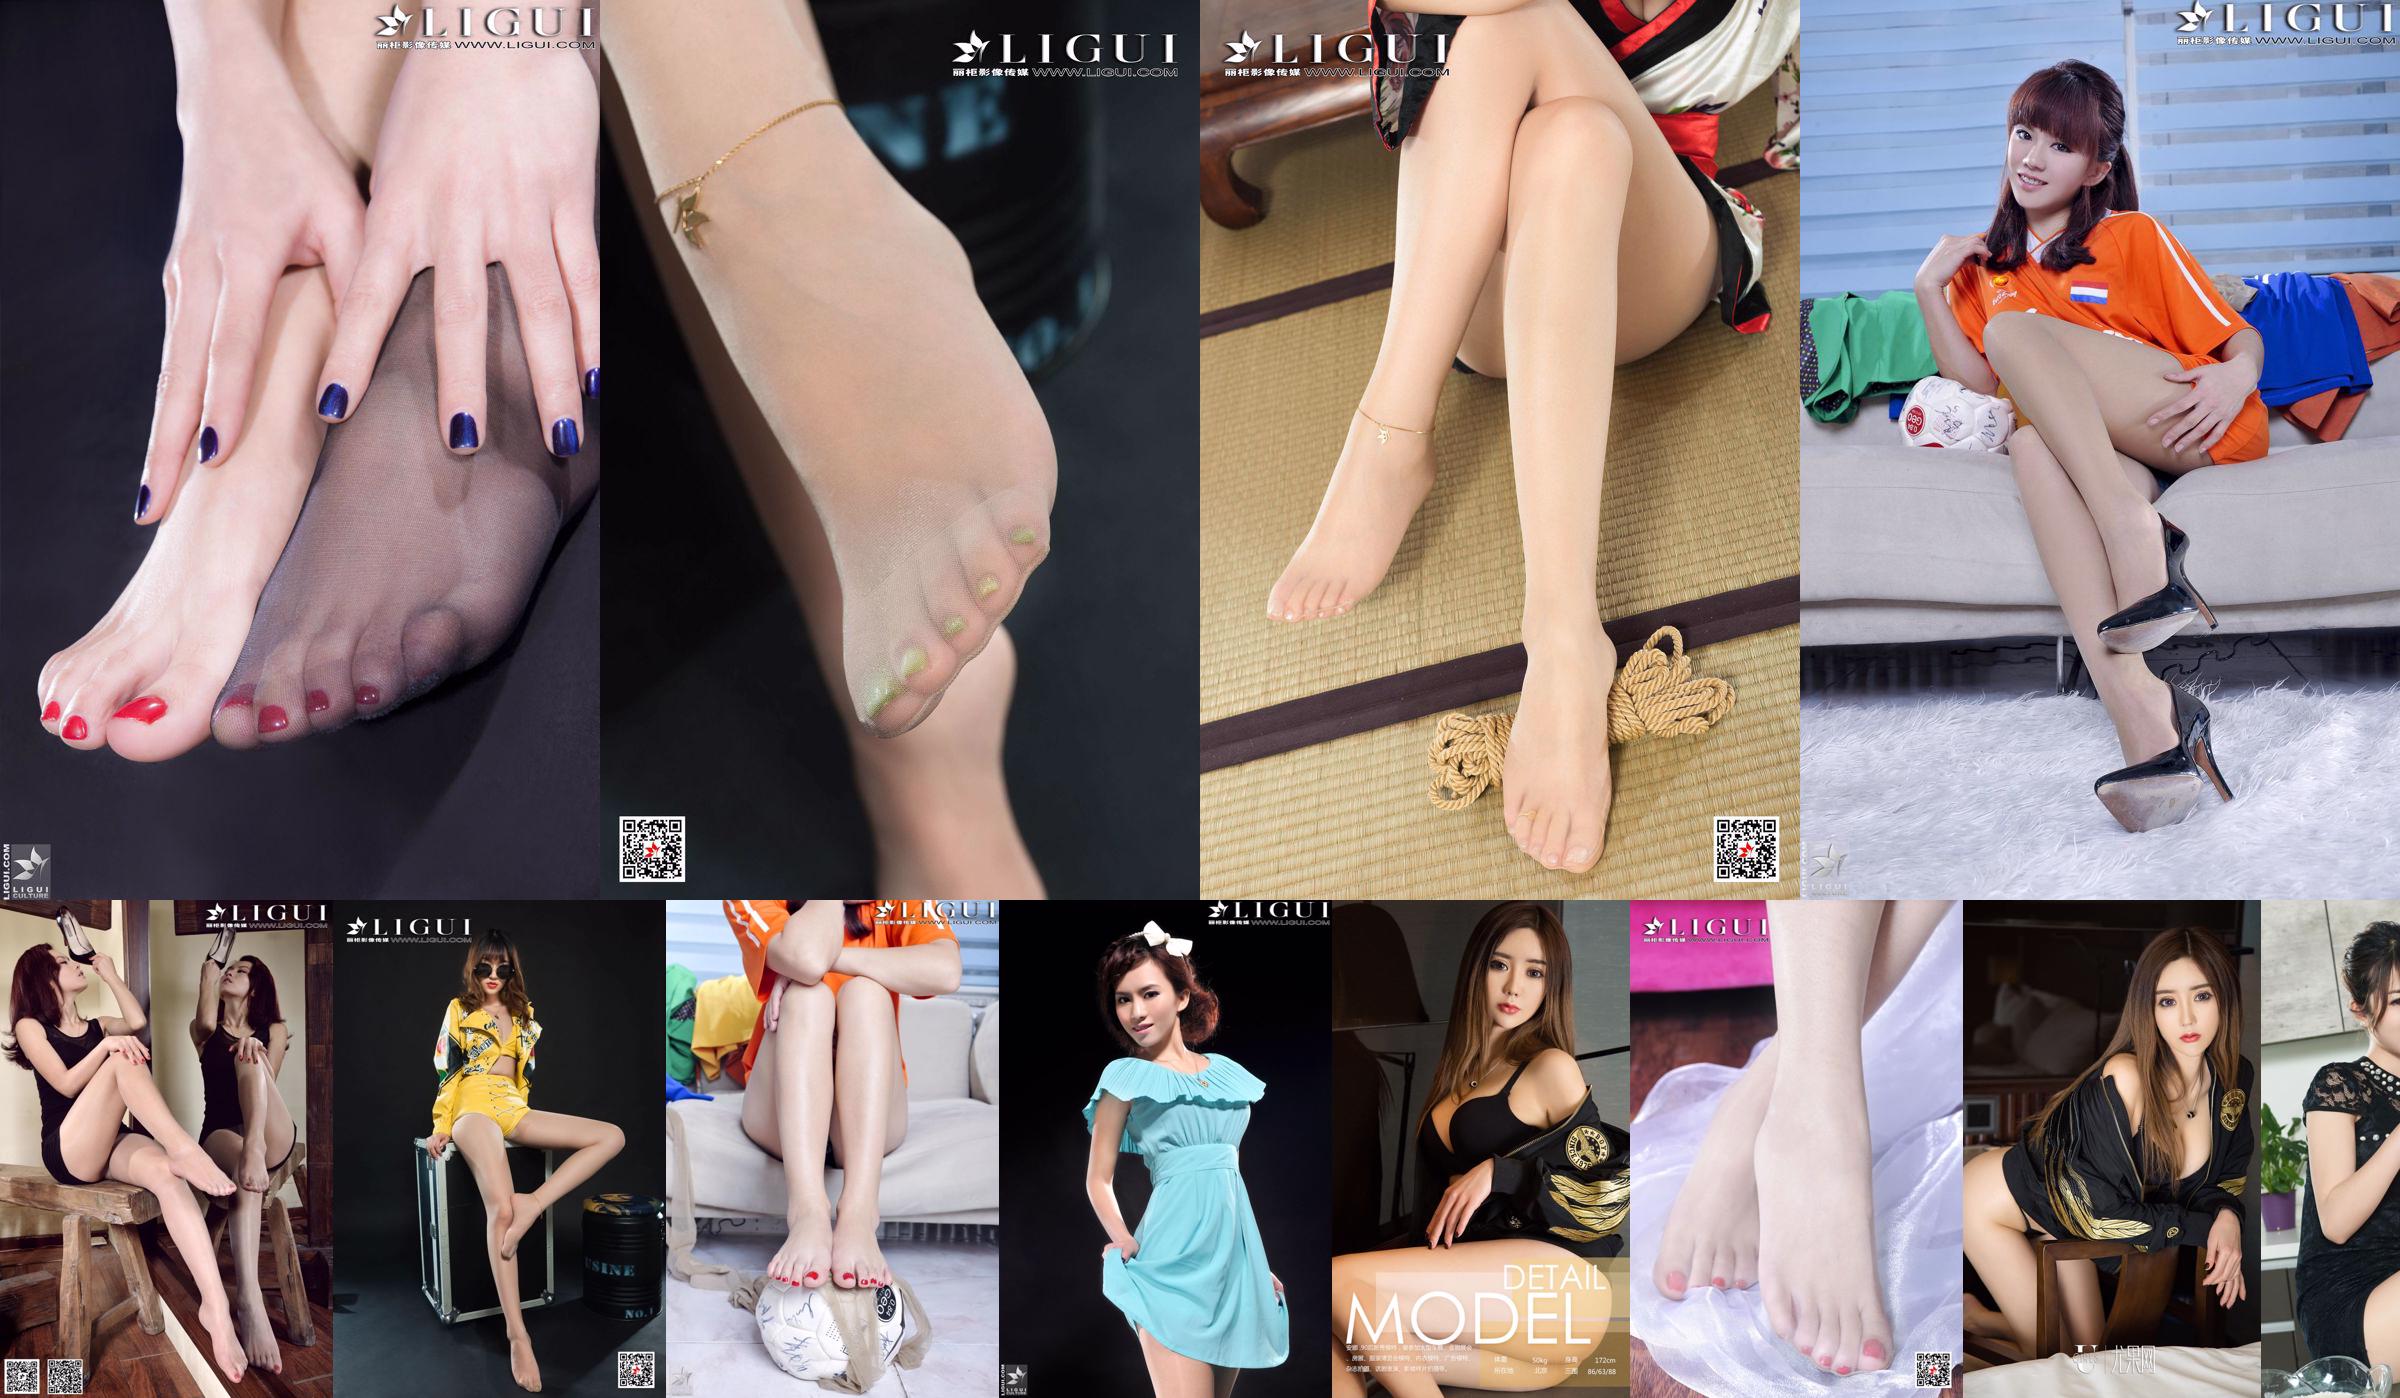 Model Annas "Cheongsam Lady Silky Foot" Sämtliche Arbeiten [LiGui] Schöne Beine und seidige Füße Foto Bild No.078e4c Seite 1